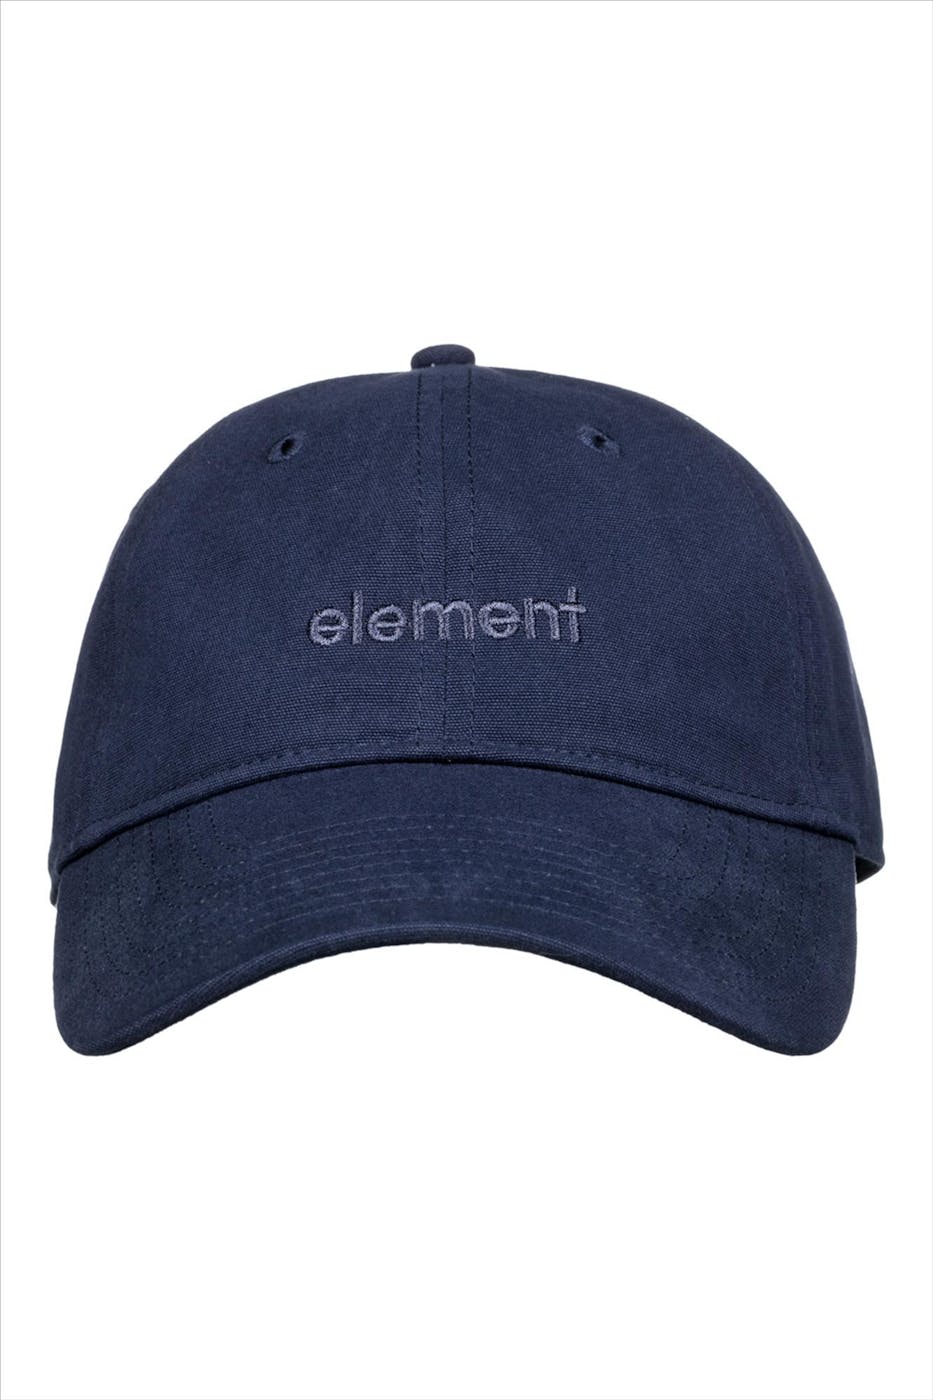 Element - Donkerblauwe Fluky pet